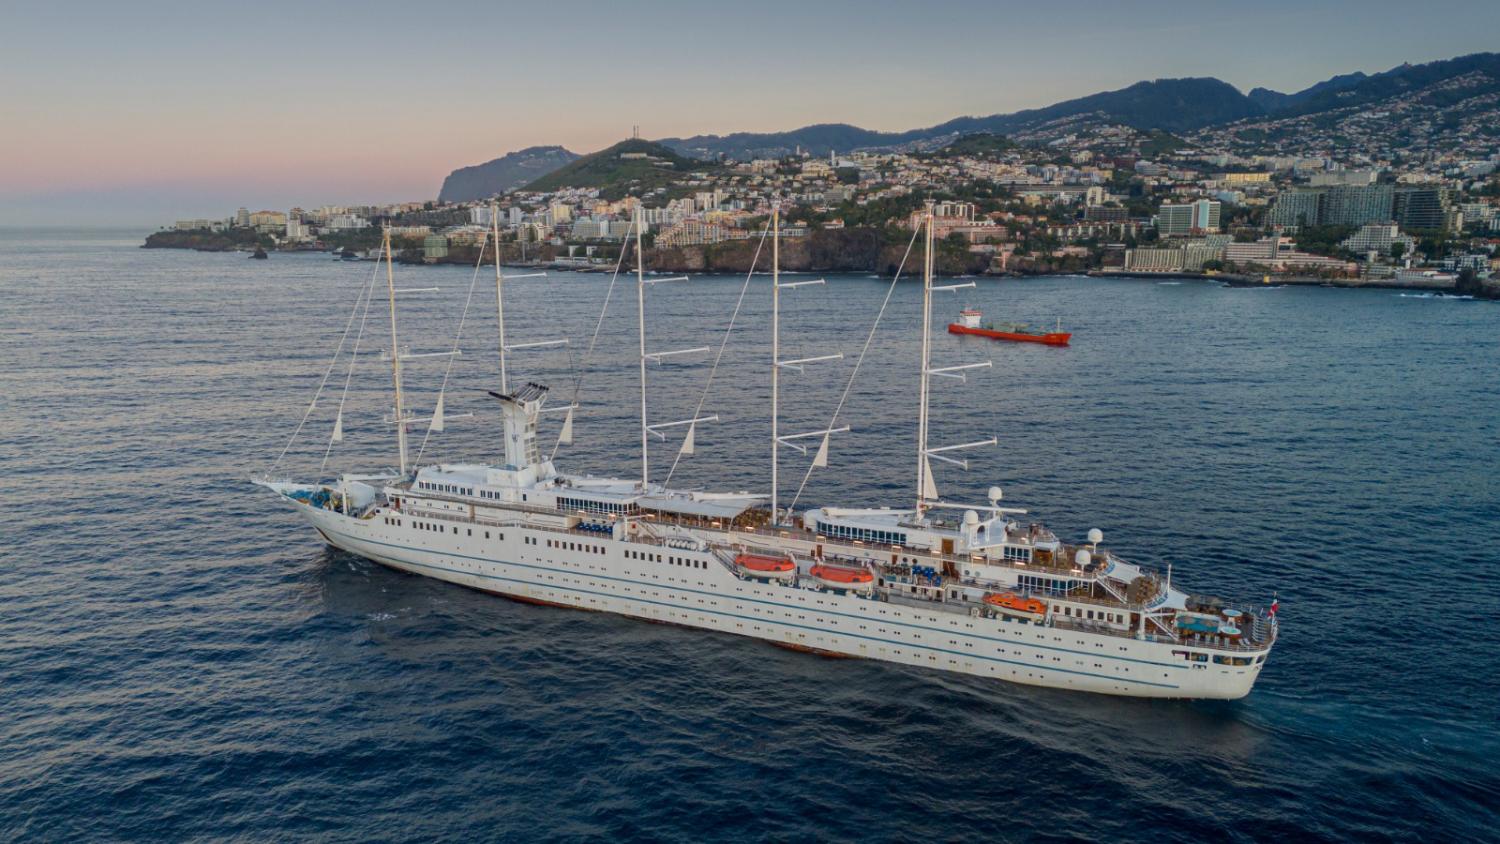 Navio de cruzeiro ‘Wind Surf’ regressa ao Funchal 15 anos depois